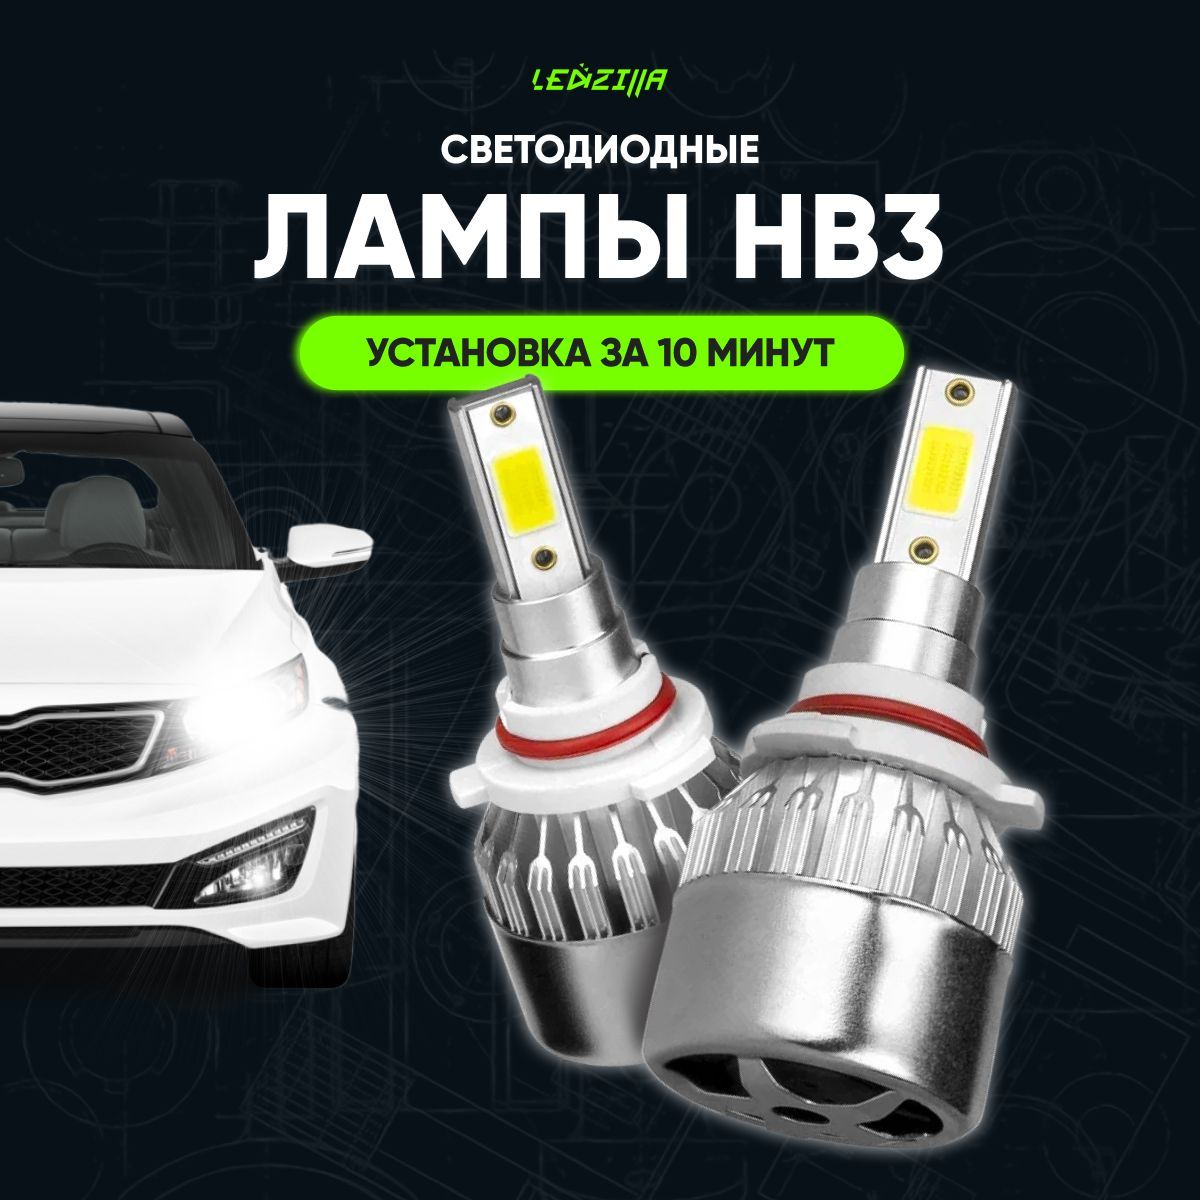 Что будет, если поставить в фары не те лампы? - luchistii-sudak.ru – автомобильный журнал